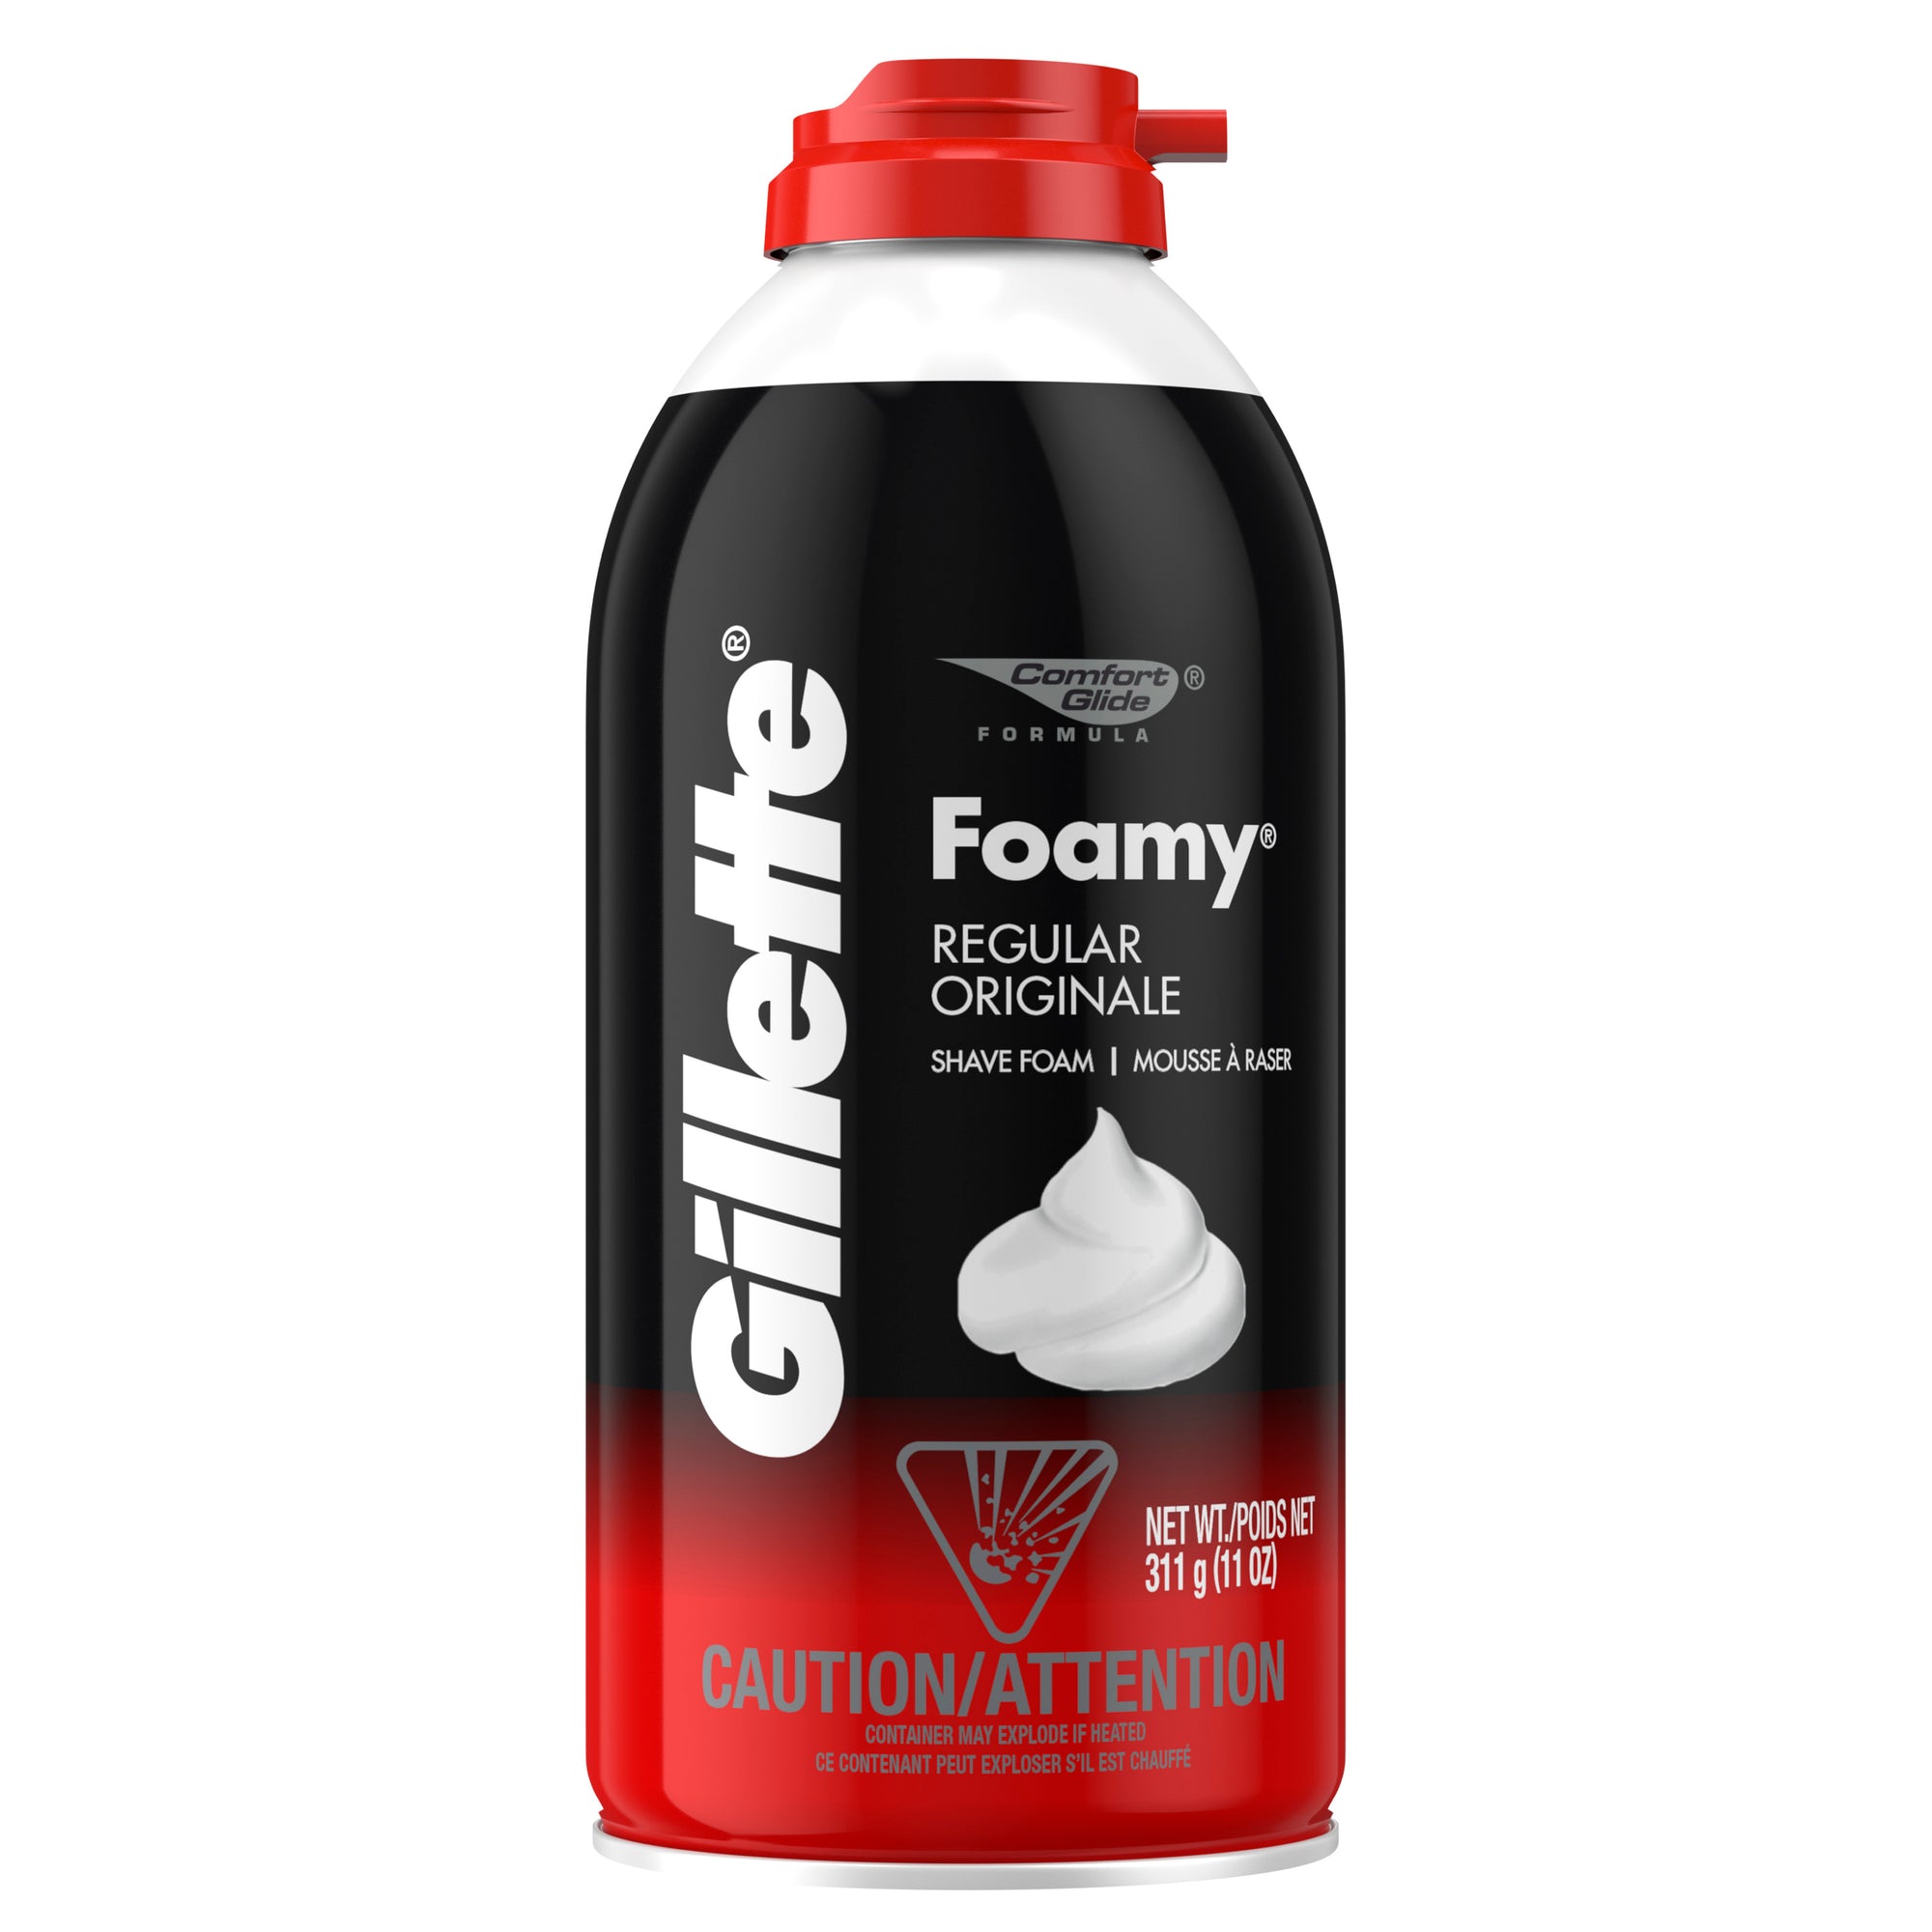 Gillette Foamy Regular Shaving Foam, 11 Oz